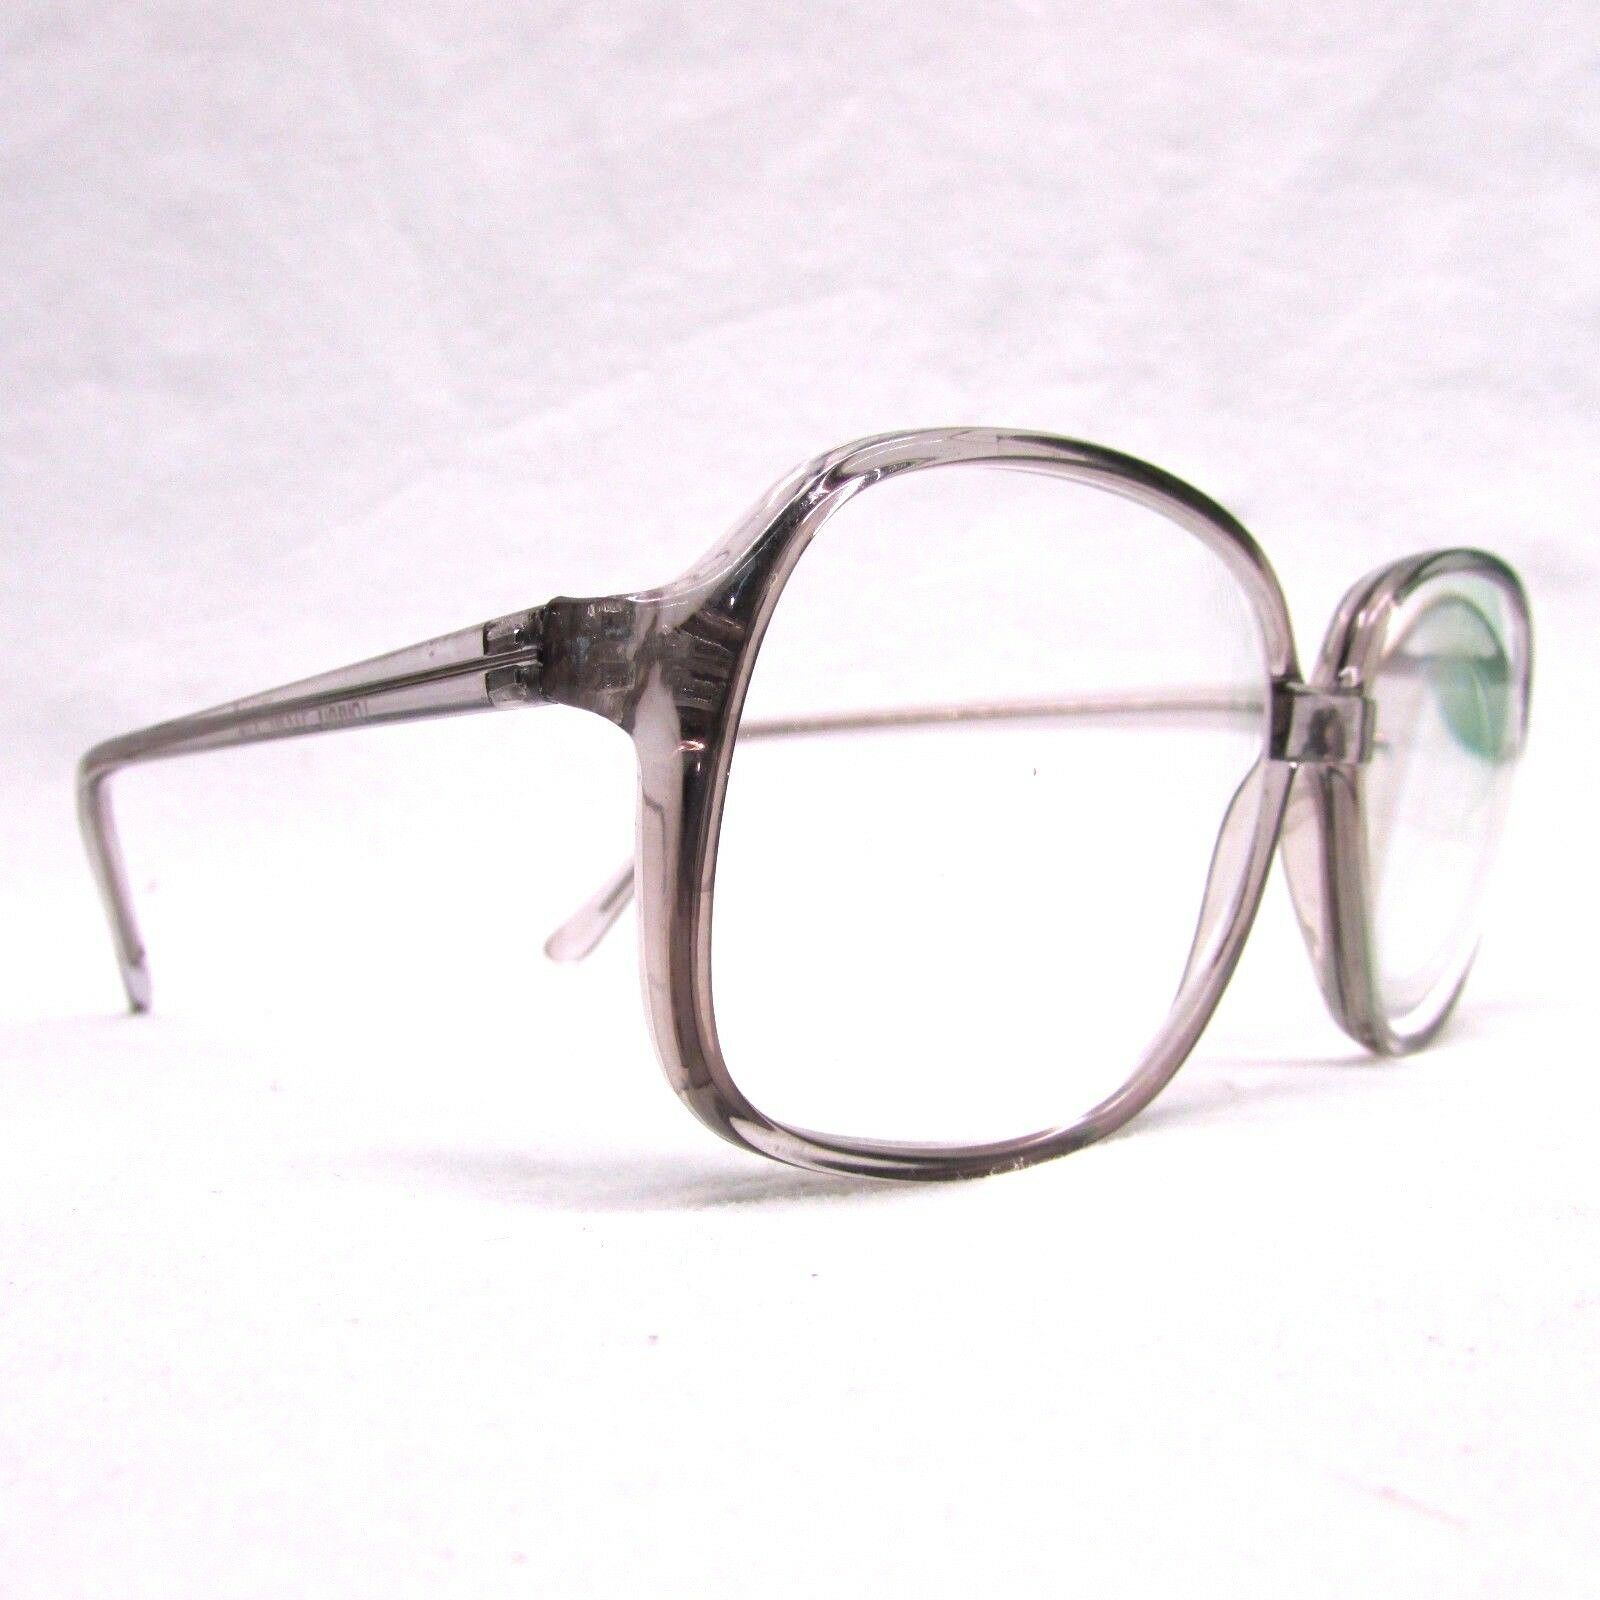 Bifocal Reader Reading Glasses Clear Oversize Lens Assorted Frames Lot